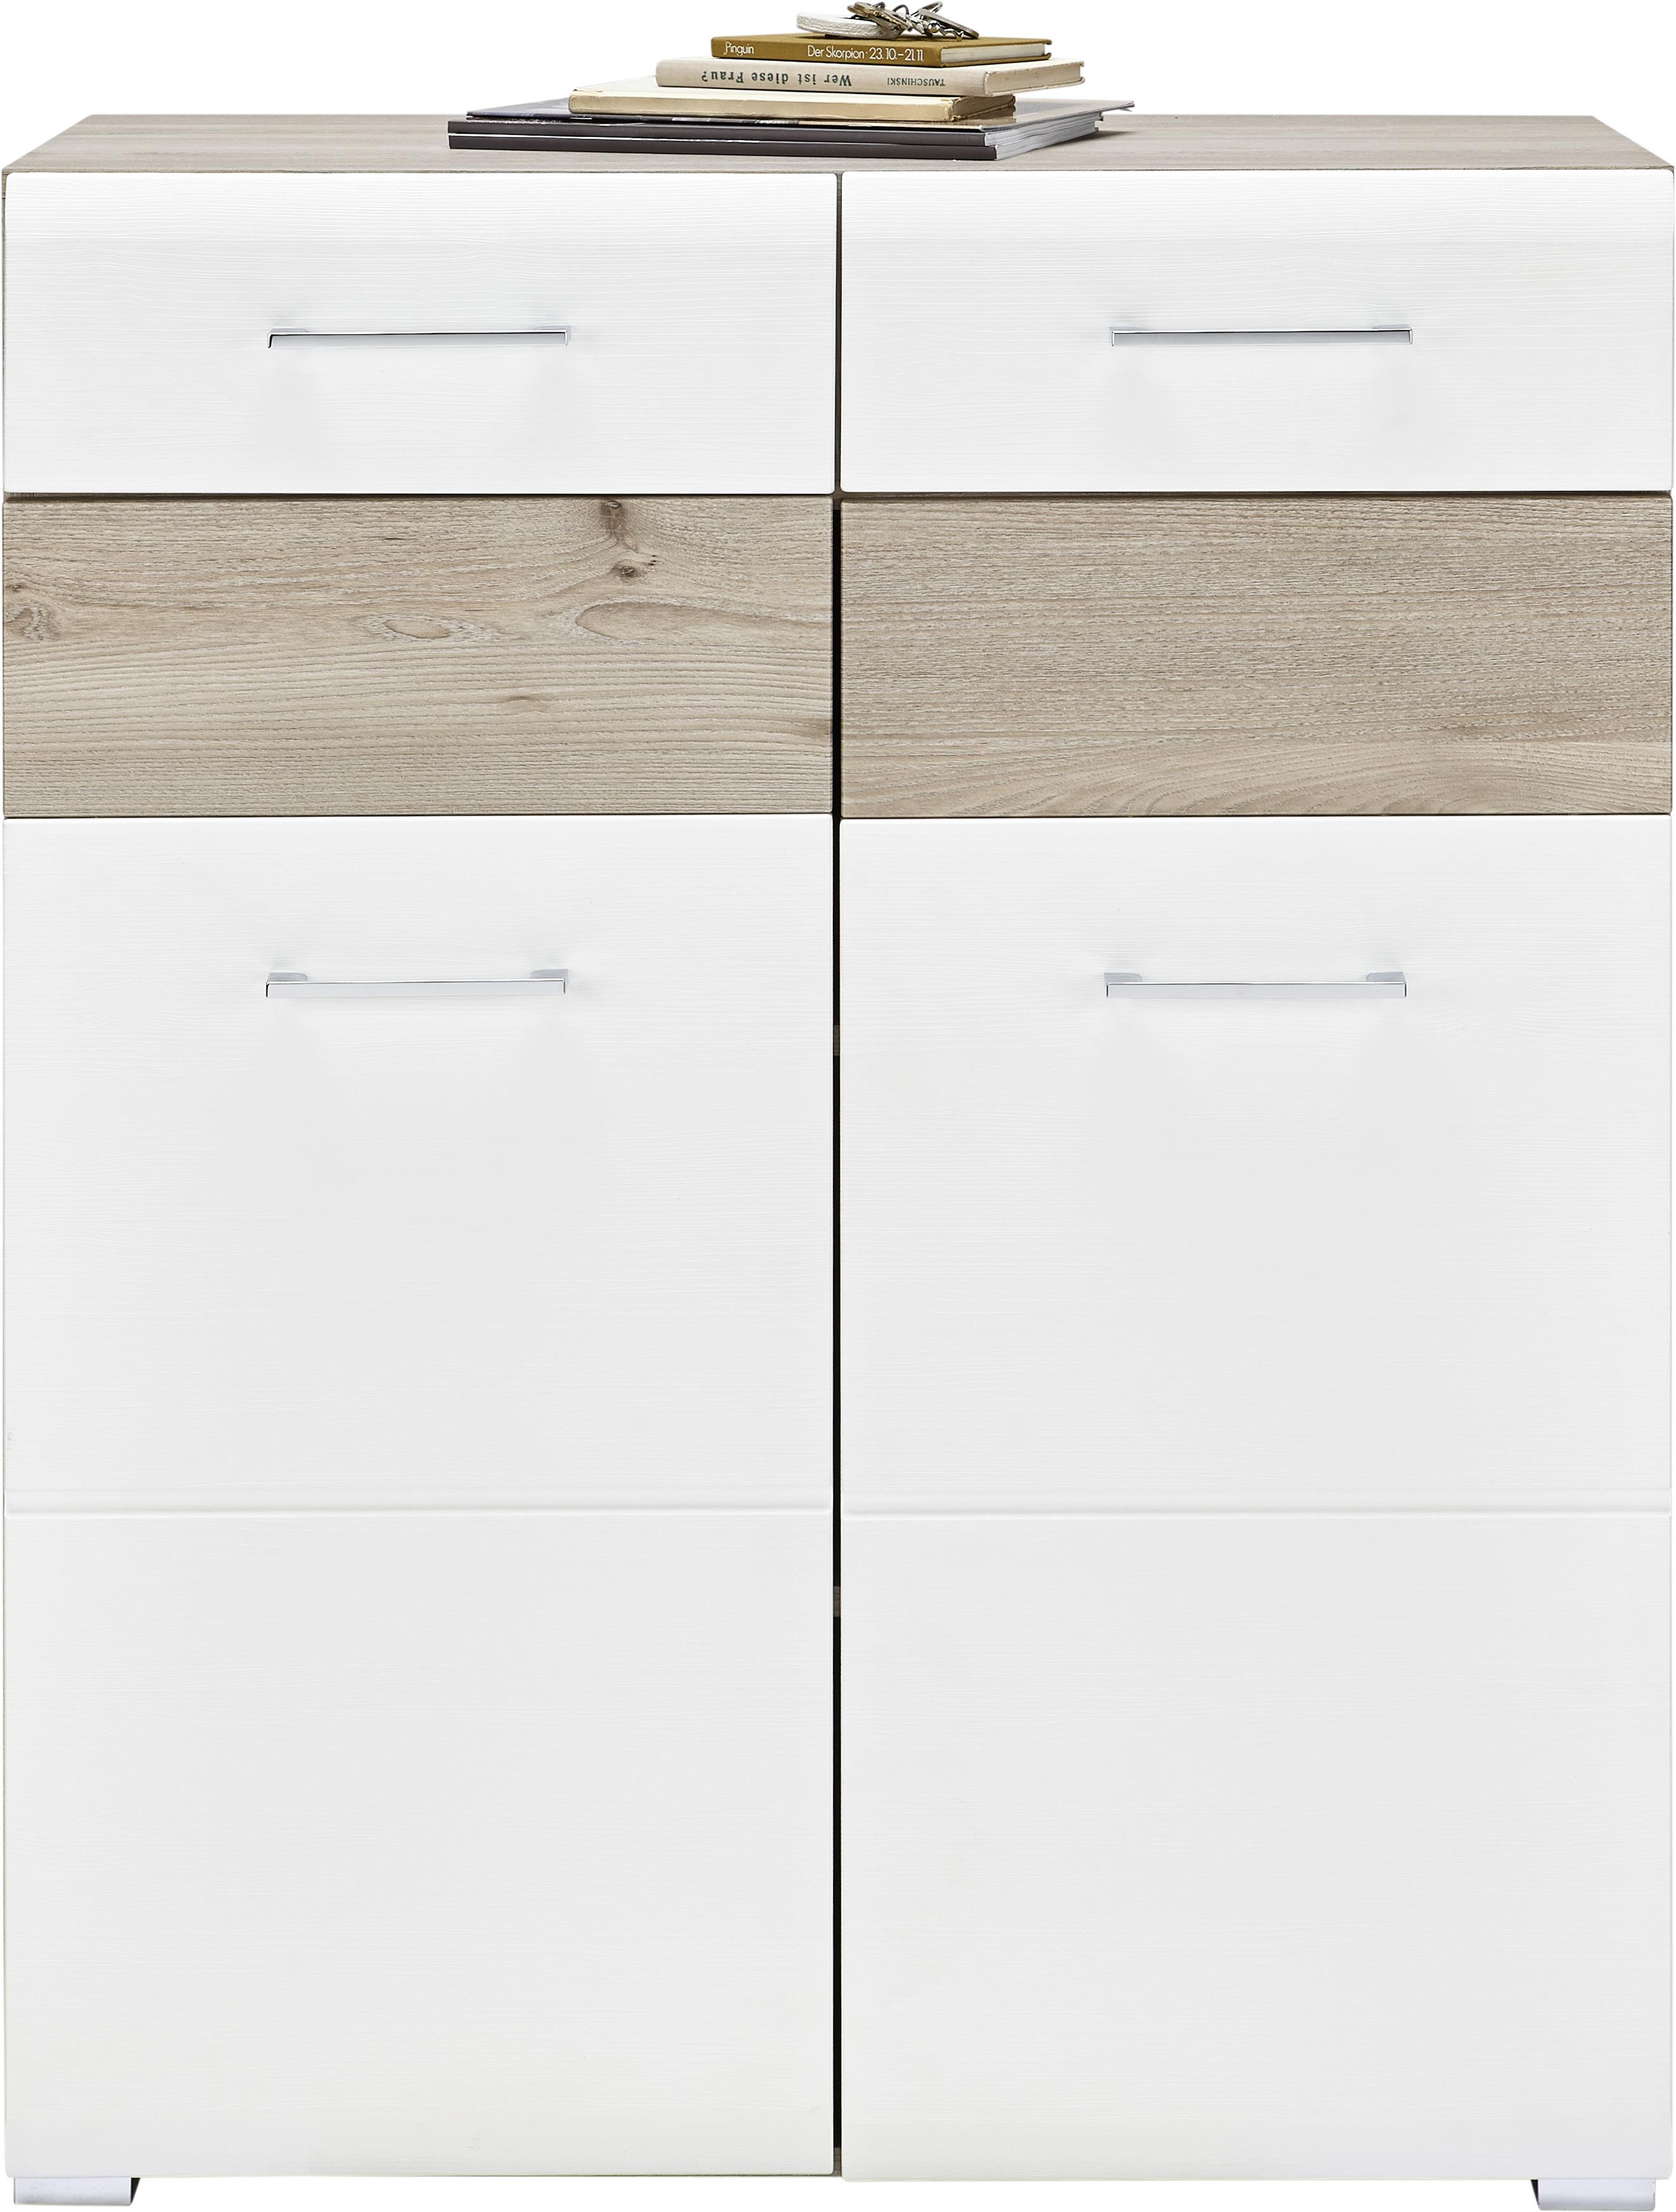 Schuhschrank in Weiß/Silbereichenfarben - Chromfarben/Weiß, MODERN, Holz/Holzwerkstoff (85/105/40cm) - Premium Living